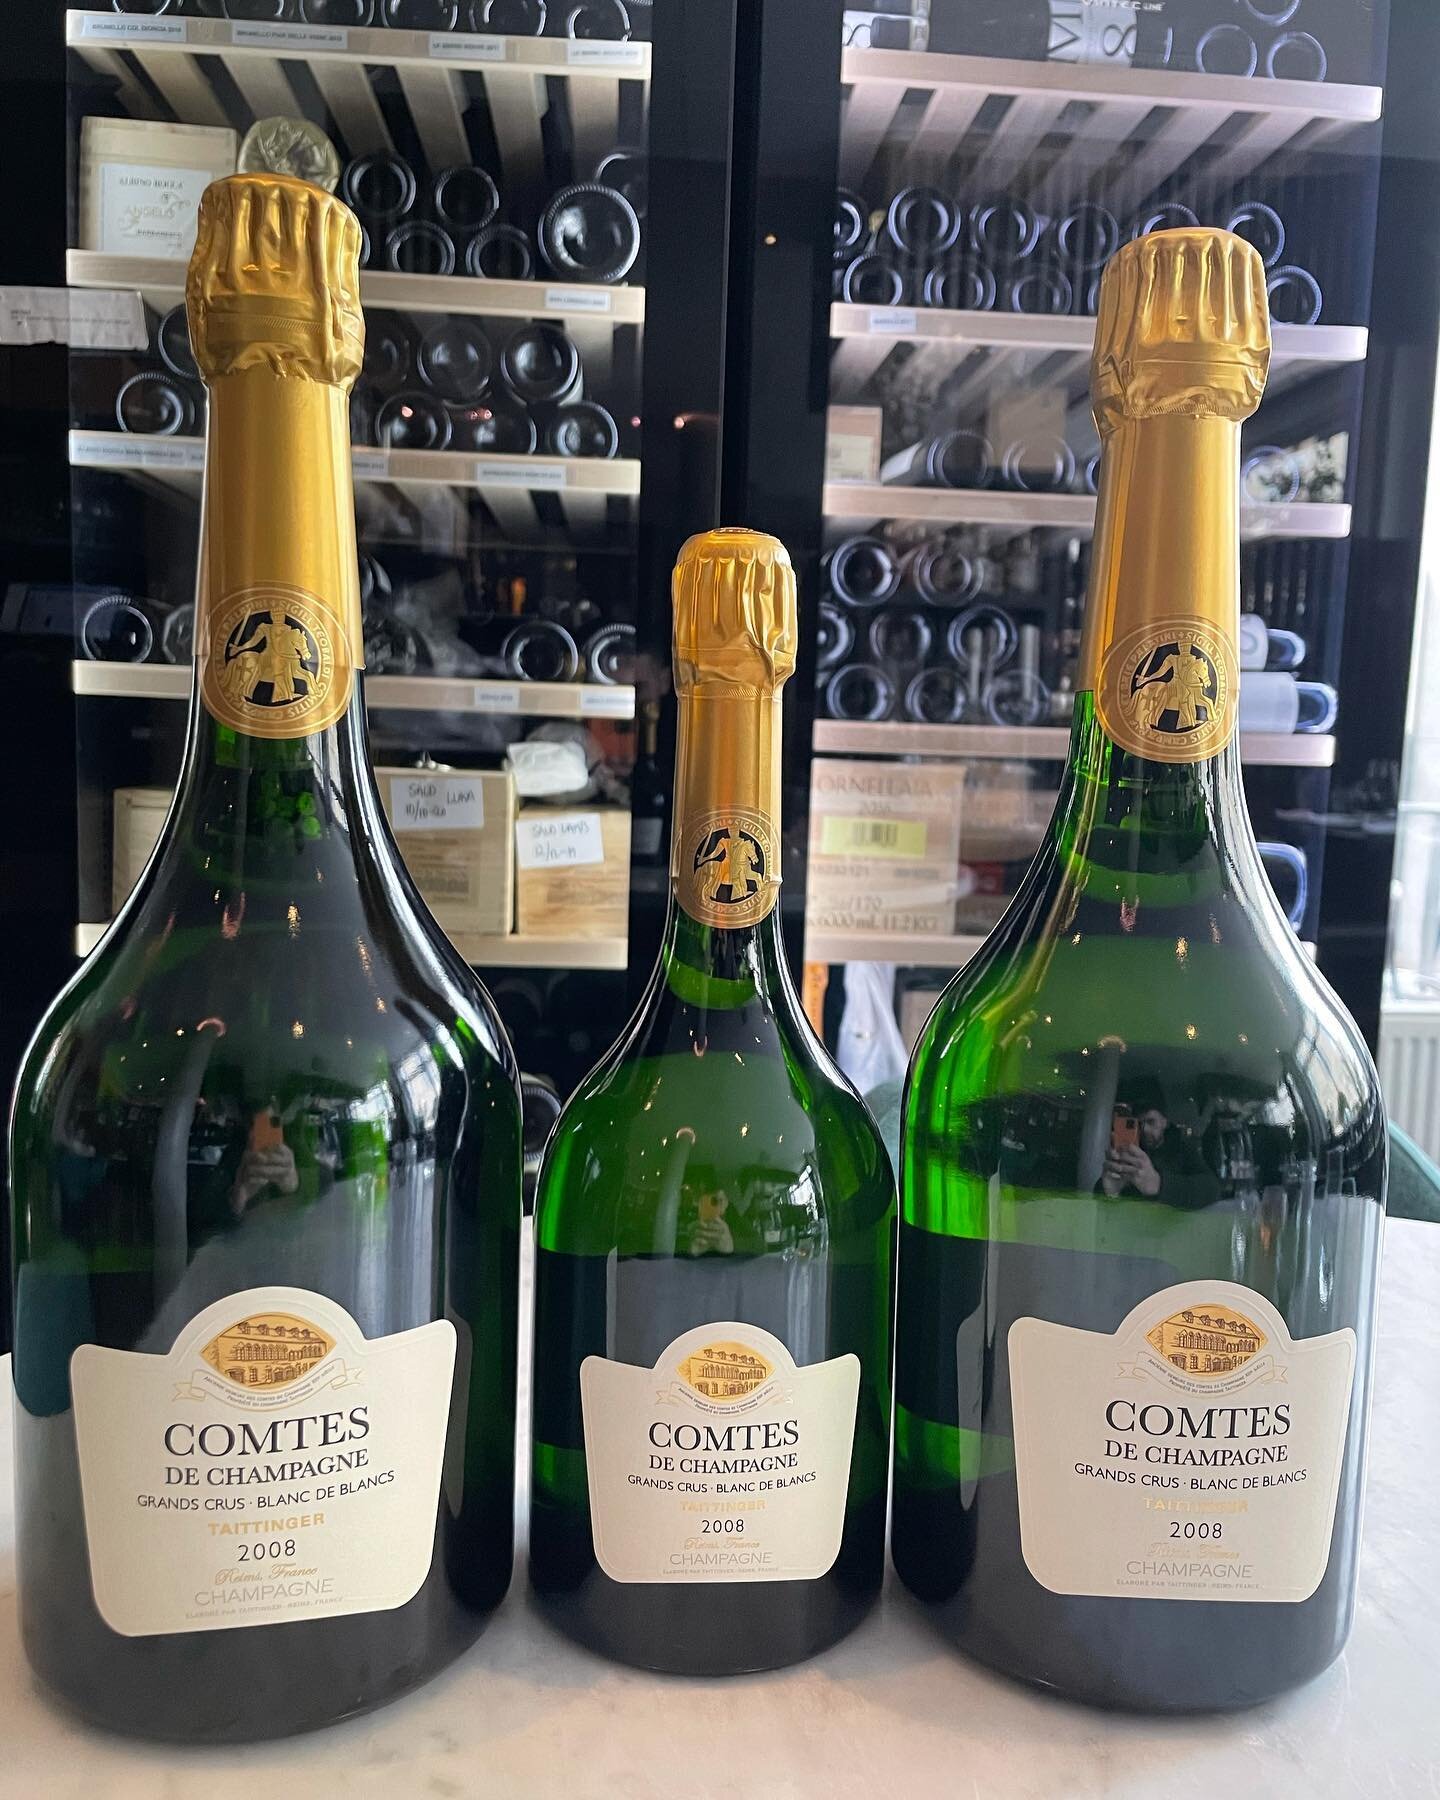 Comtes de Champagne 2008 nu &auml;ven i magnum hos oss 😍 Vill ni dricka n&aring;got otroligt lyxigt och exklusivt &auml;r denna champagne det r&auml;tta valet. 🙌🏽